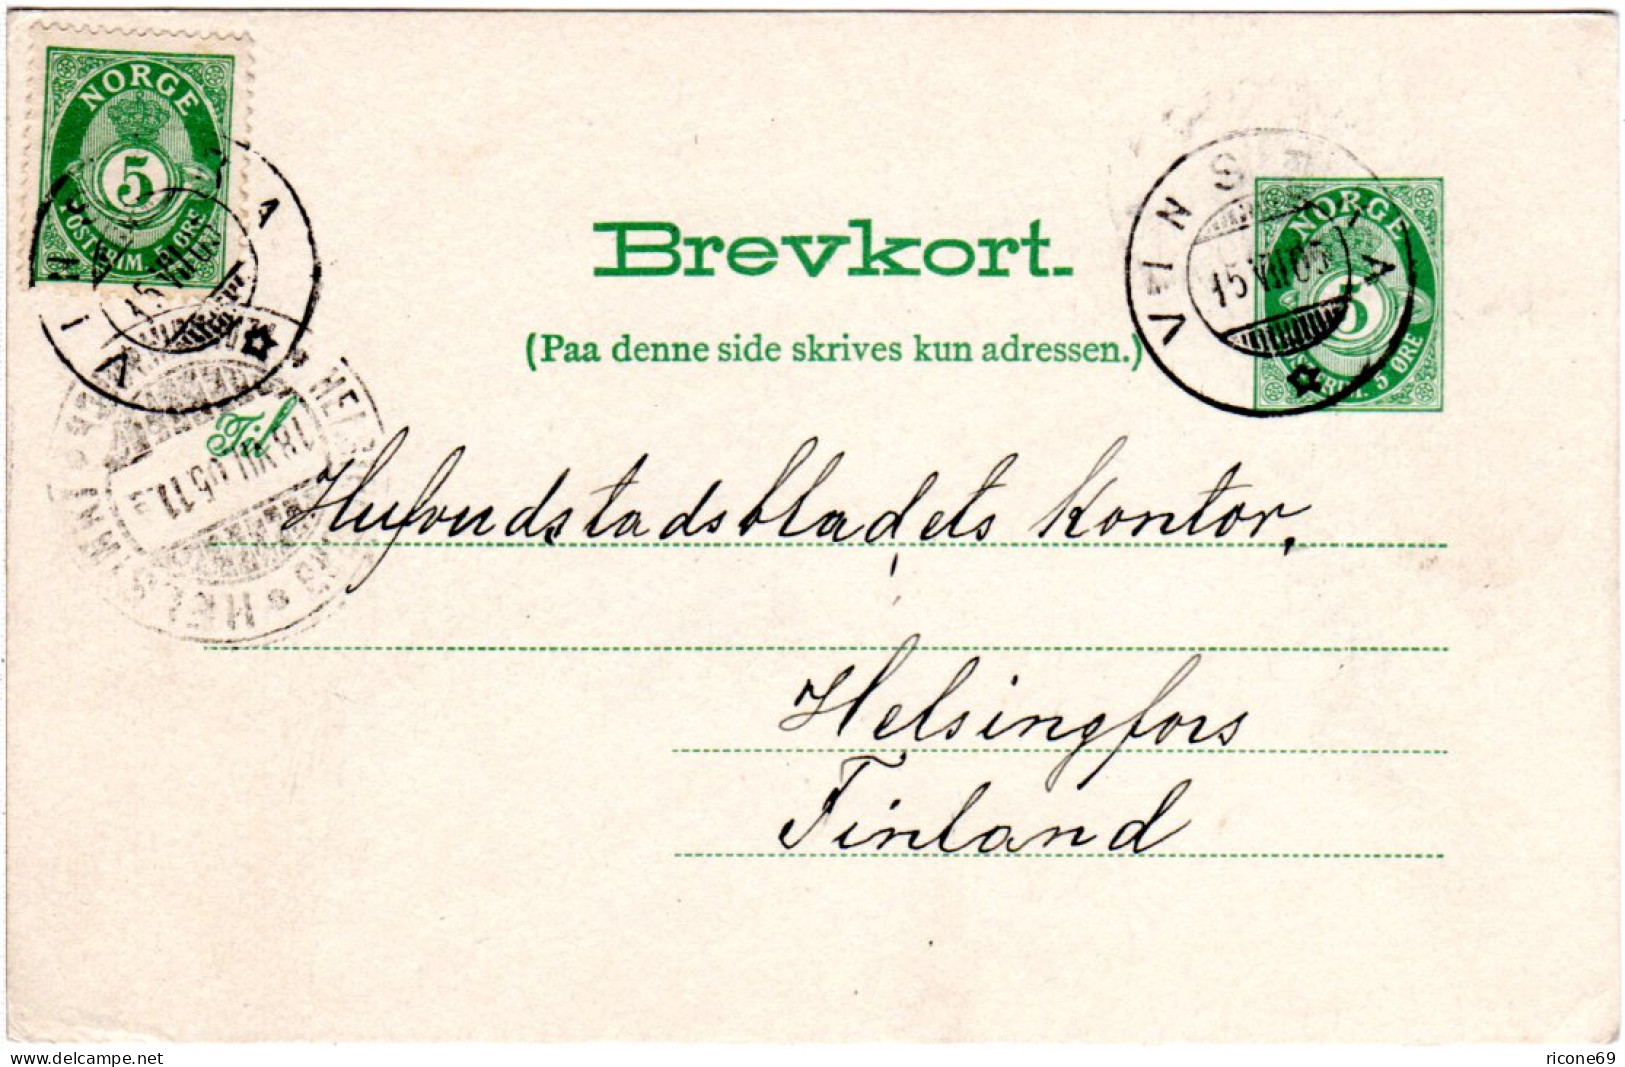 Norwegen 1905, 5 öre Zusatzfr. Auf 5 öre Ganzsache V. VINSTRA N. Finnland - Storia Postale